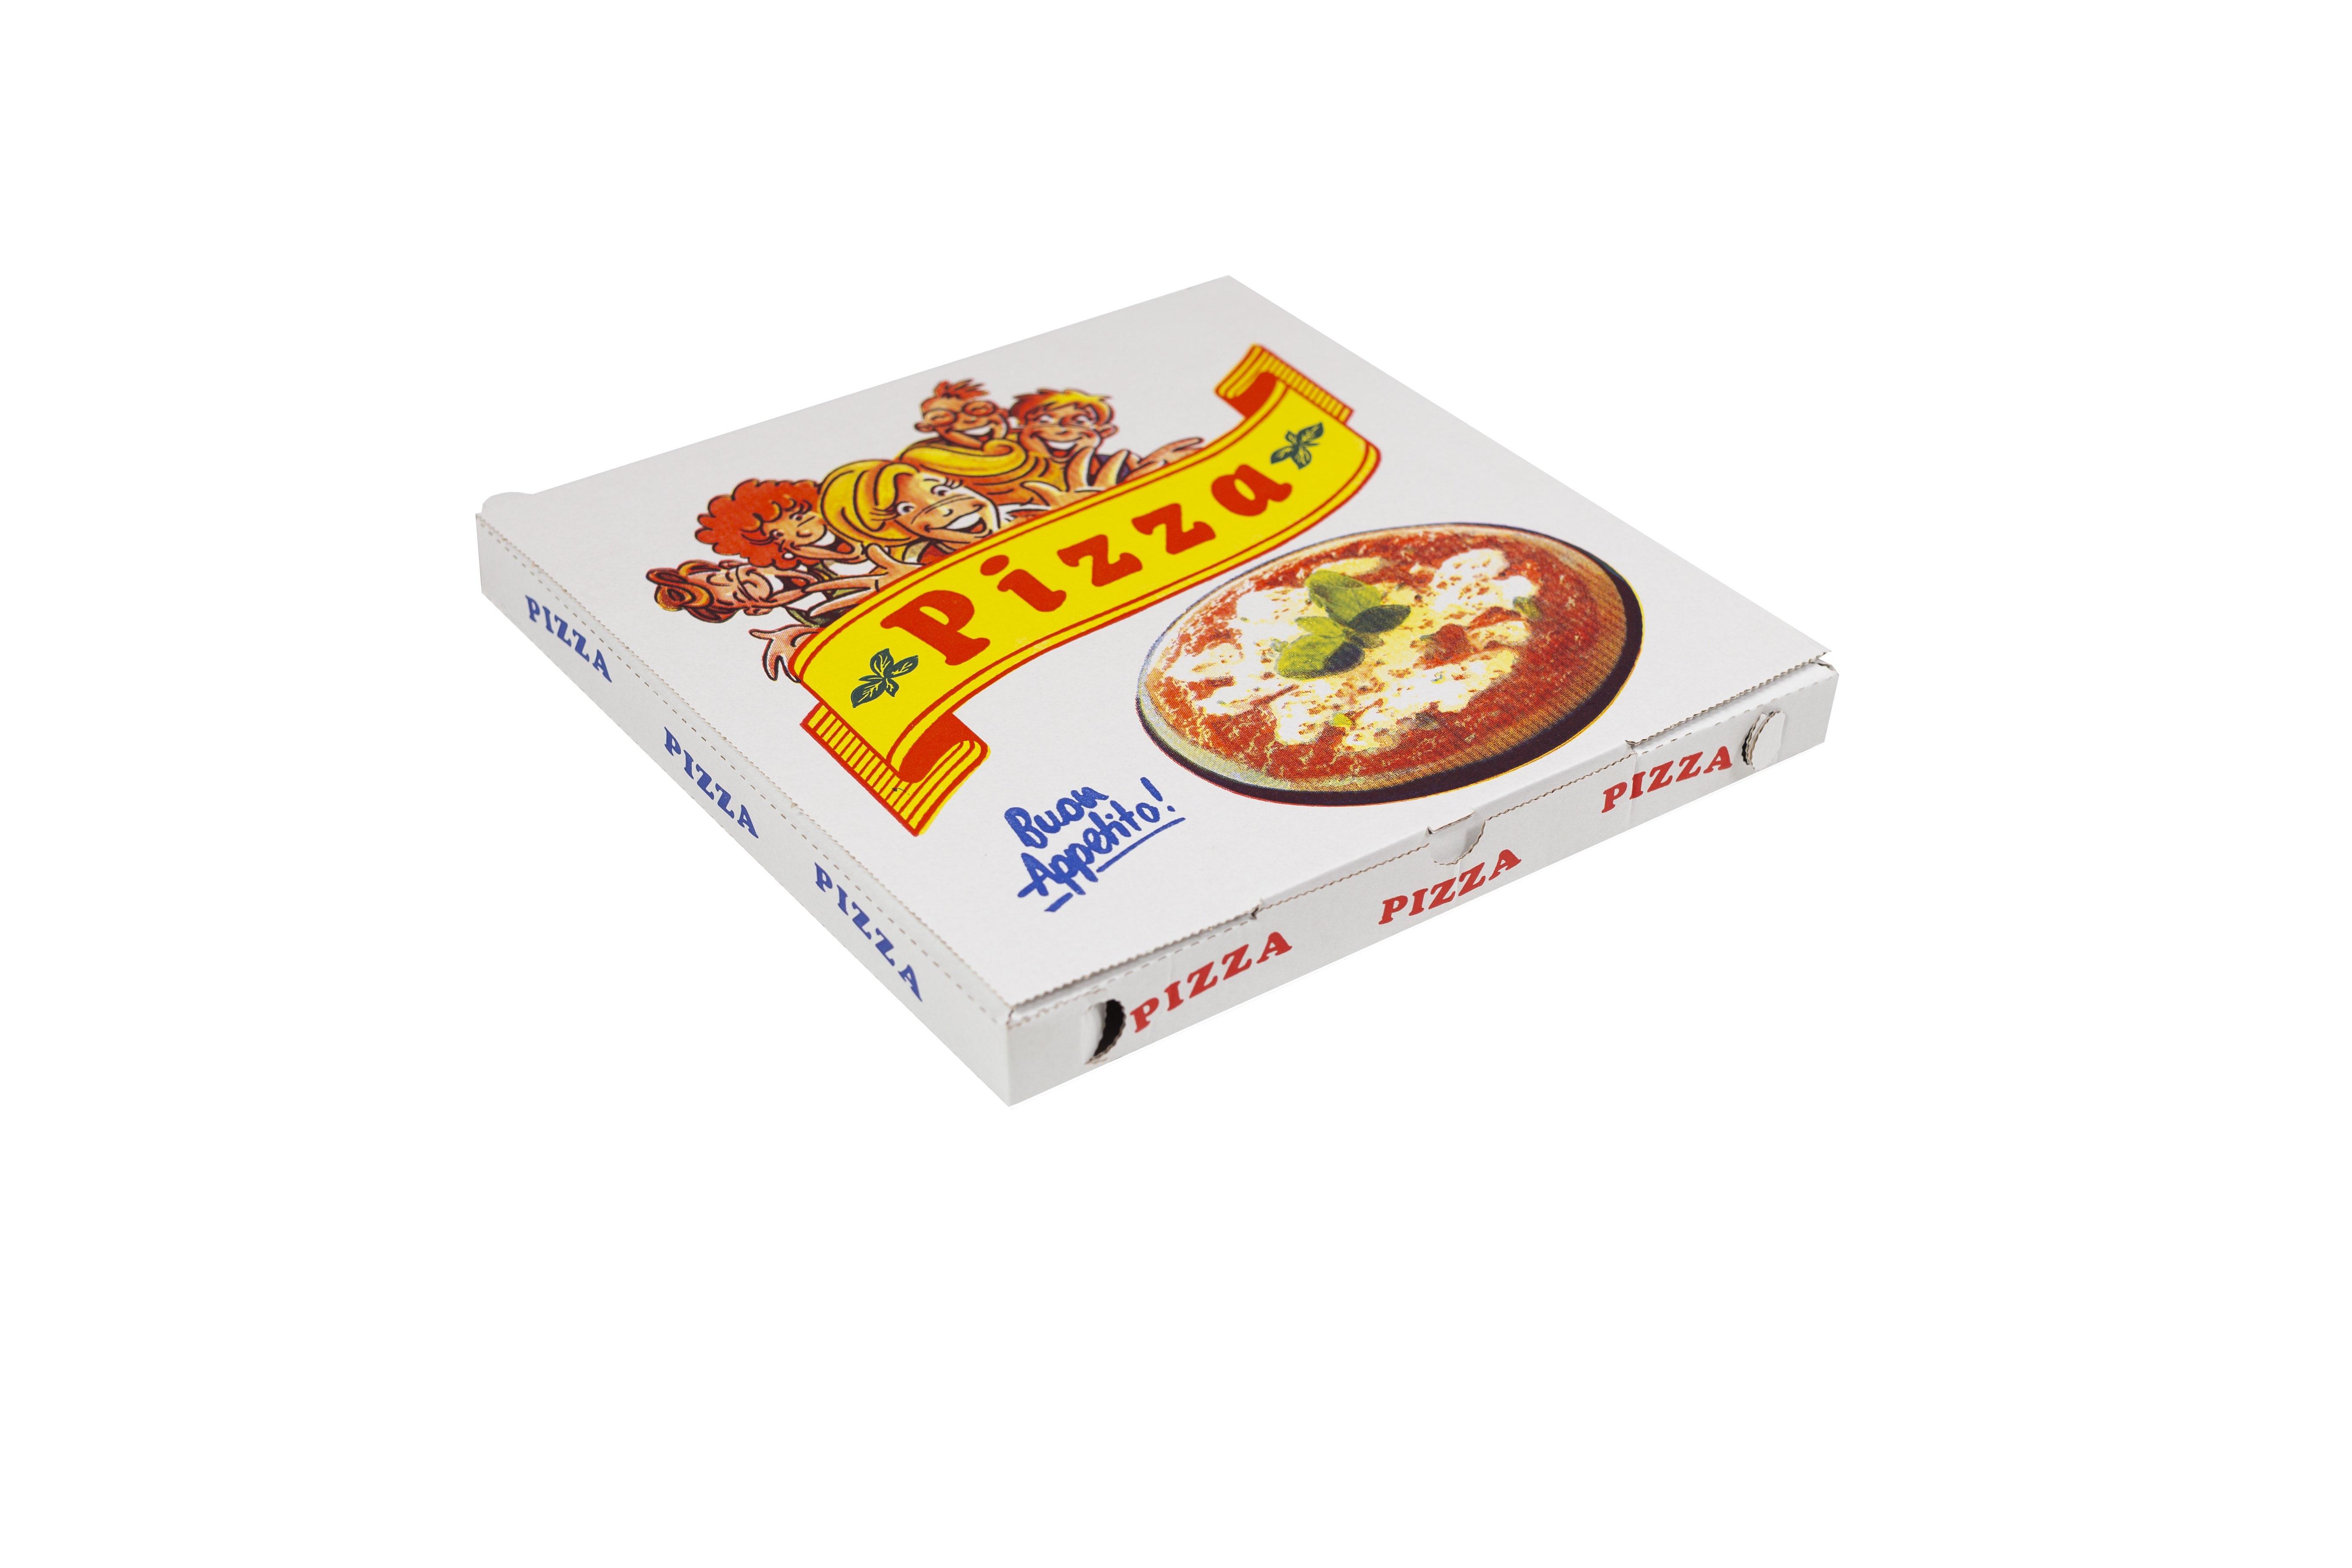 SCATOLE PER PIZZA - Contenitori per alimenti - Vendita all'ingrosso di  sacchetti carta per alimenti, vassoi, contenitori per alimenti